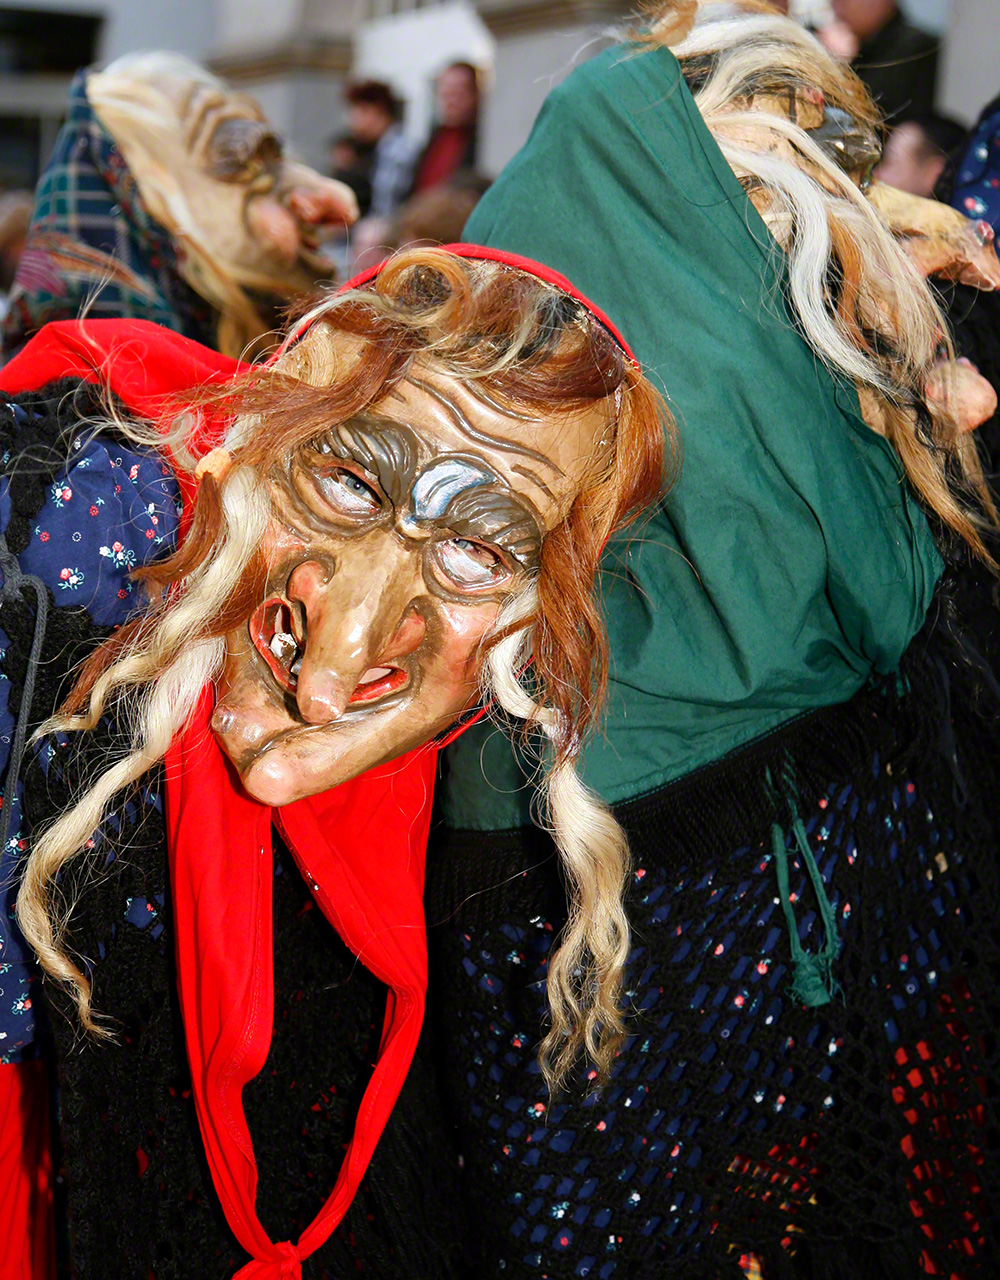 Brujas de un carnaval alemán. La gente se pasea por las calles vestida con traje tradicional o disfrazada.